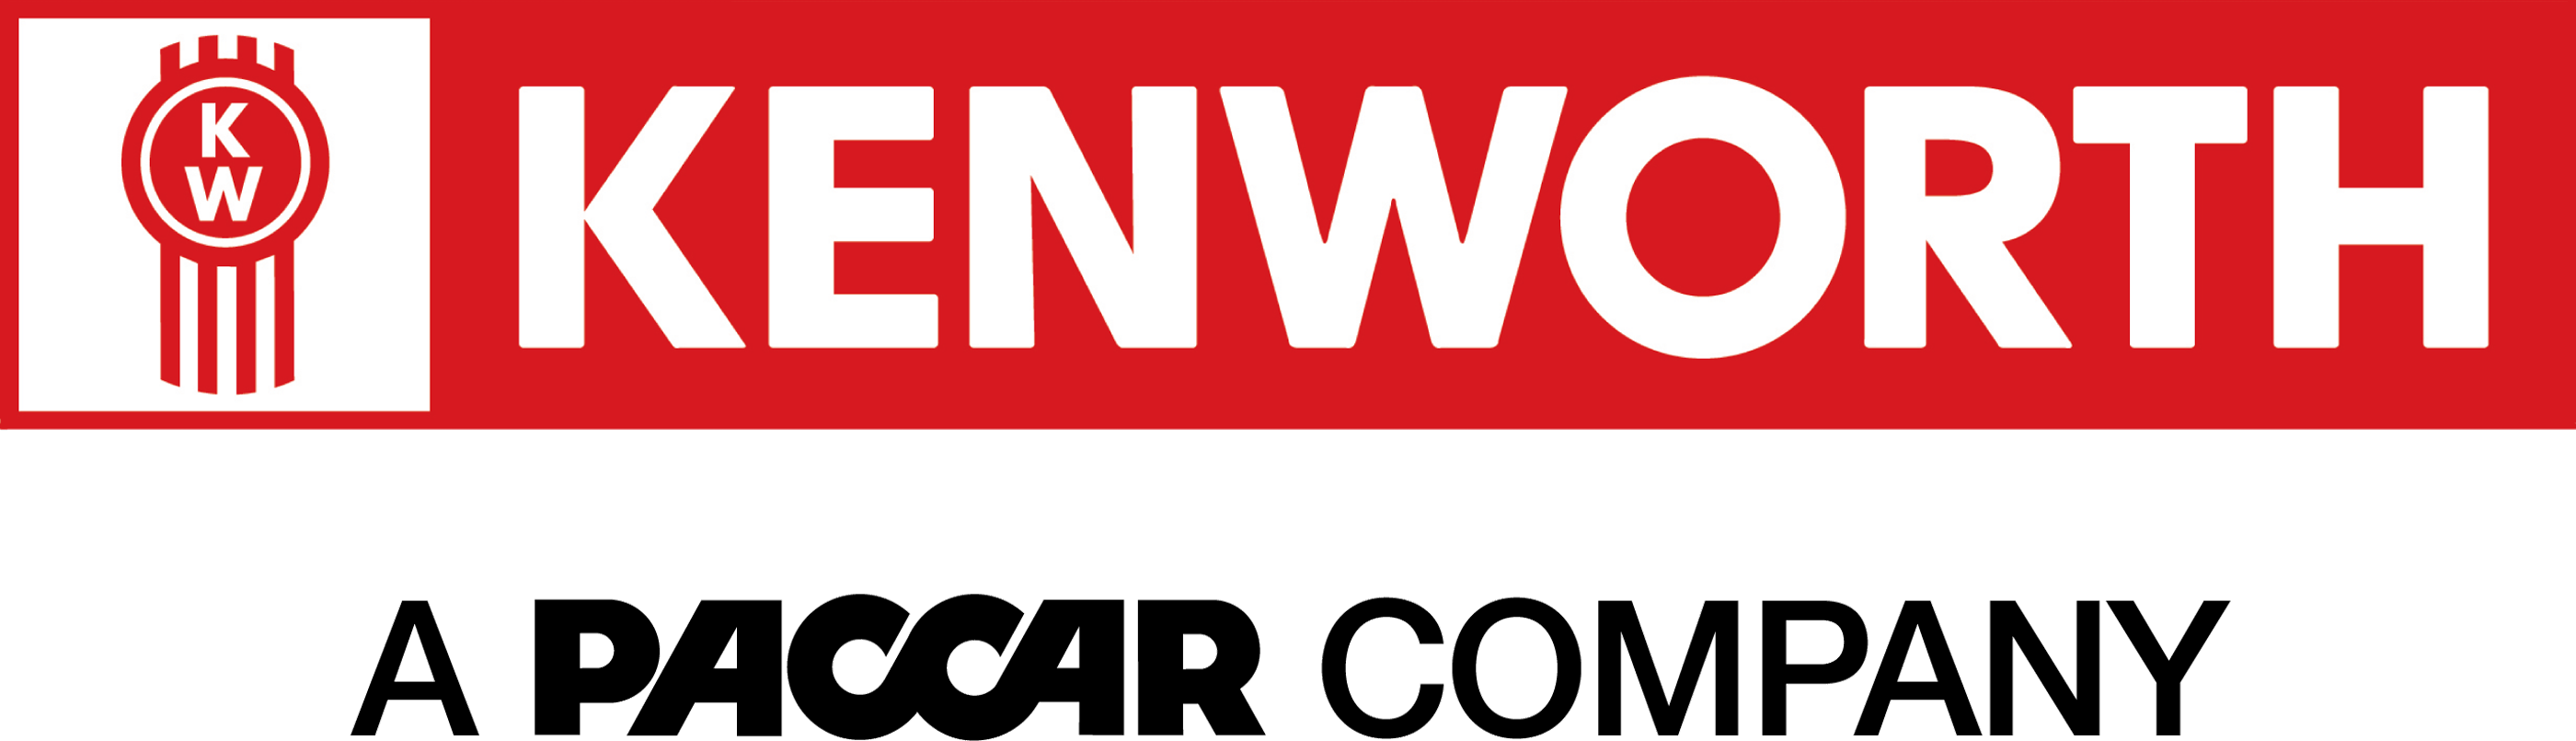 Kenworth Logo - Kenworth Logos